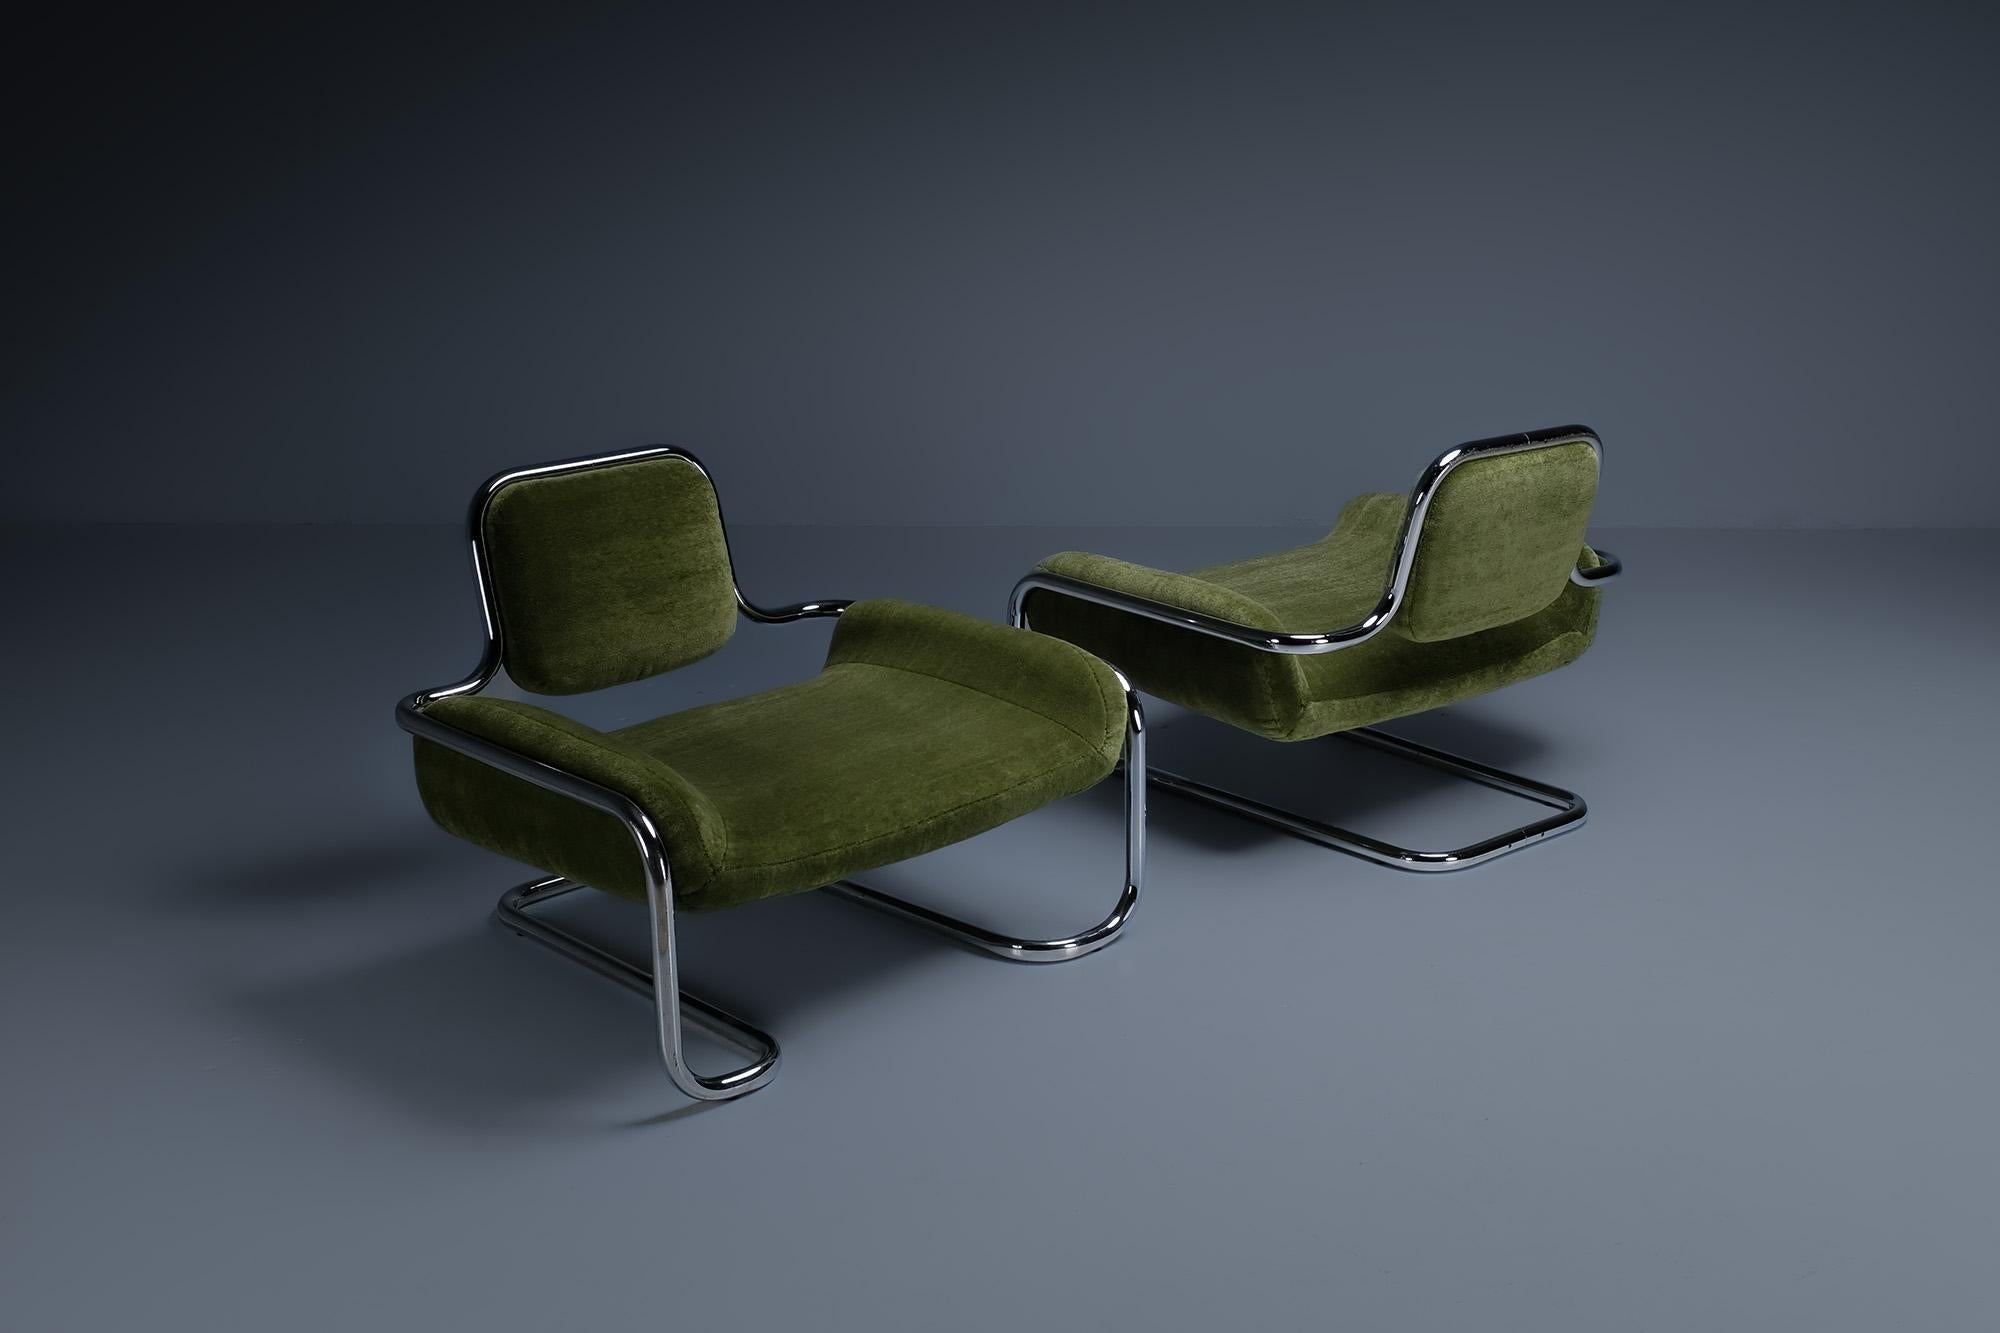 Les chaises longues Limandes de Kwok Hoi Chan pour Steiner sont un exemple exceptionnel de design moderne et de fabrication de haute qualité. Dès l'instant où l'on pose les yeux sur eux, il est clair que chaque détail a été soigneusement pensé pour